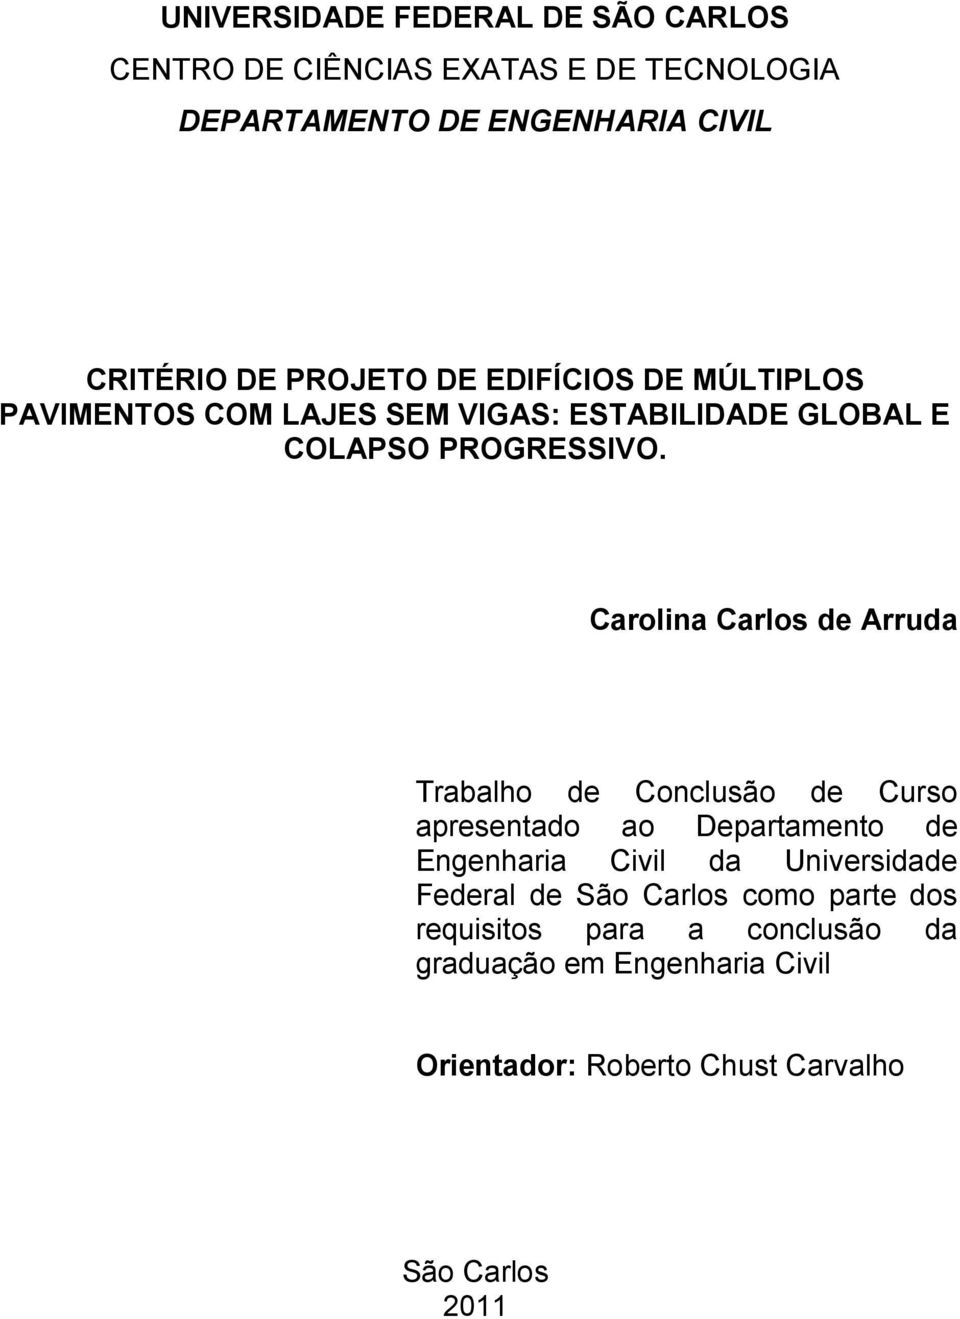 Carolina Carlos de Arruda Trabalho de Conclusão de Curso apresentado ao Departamento de Engenharia Civil da Universidade